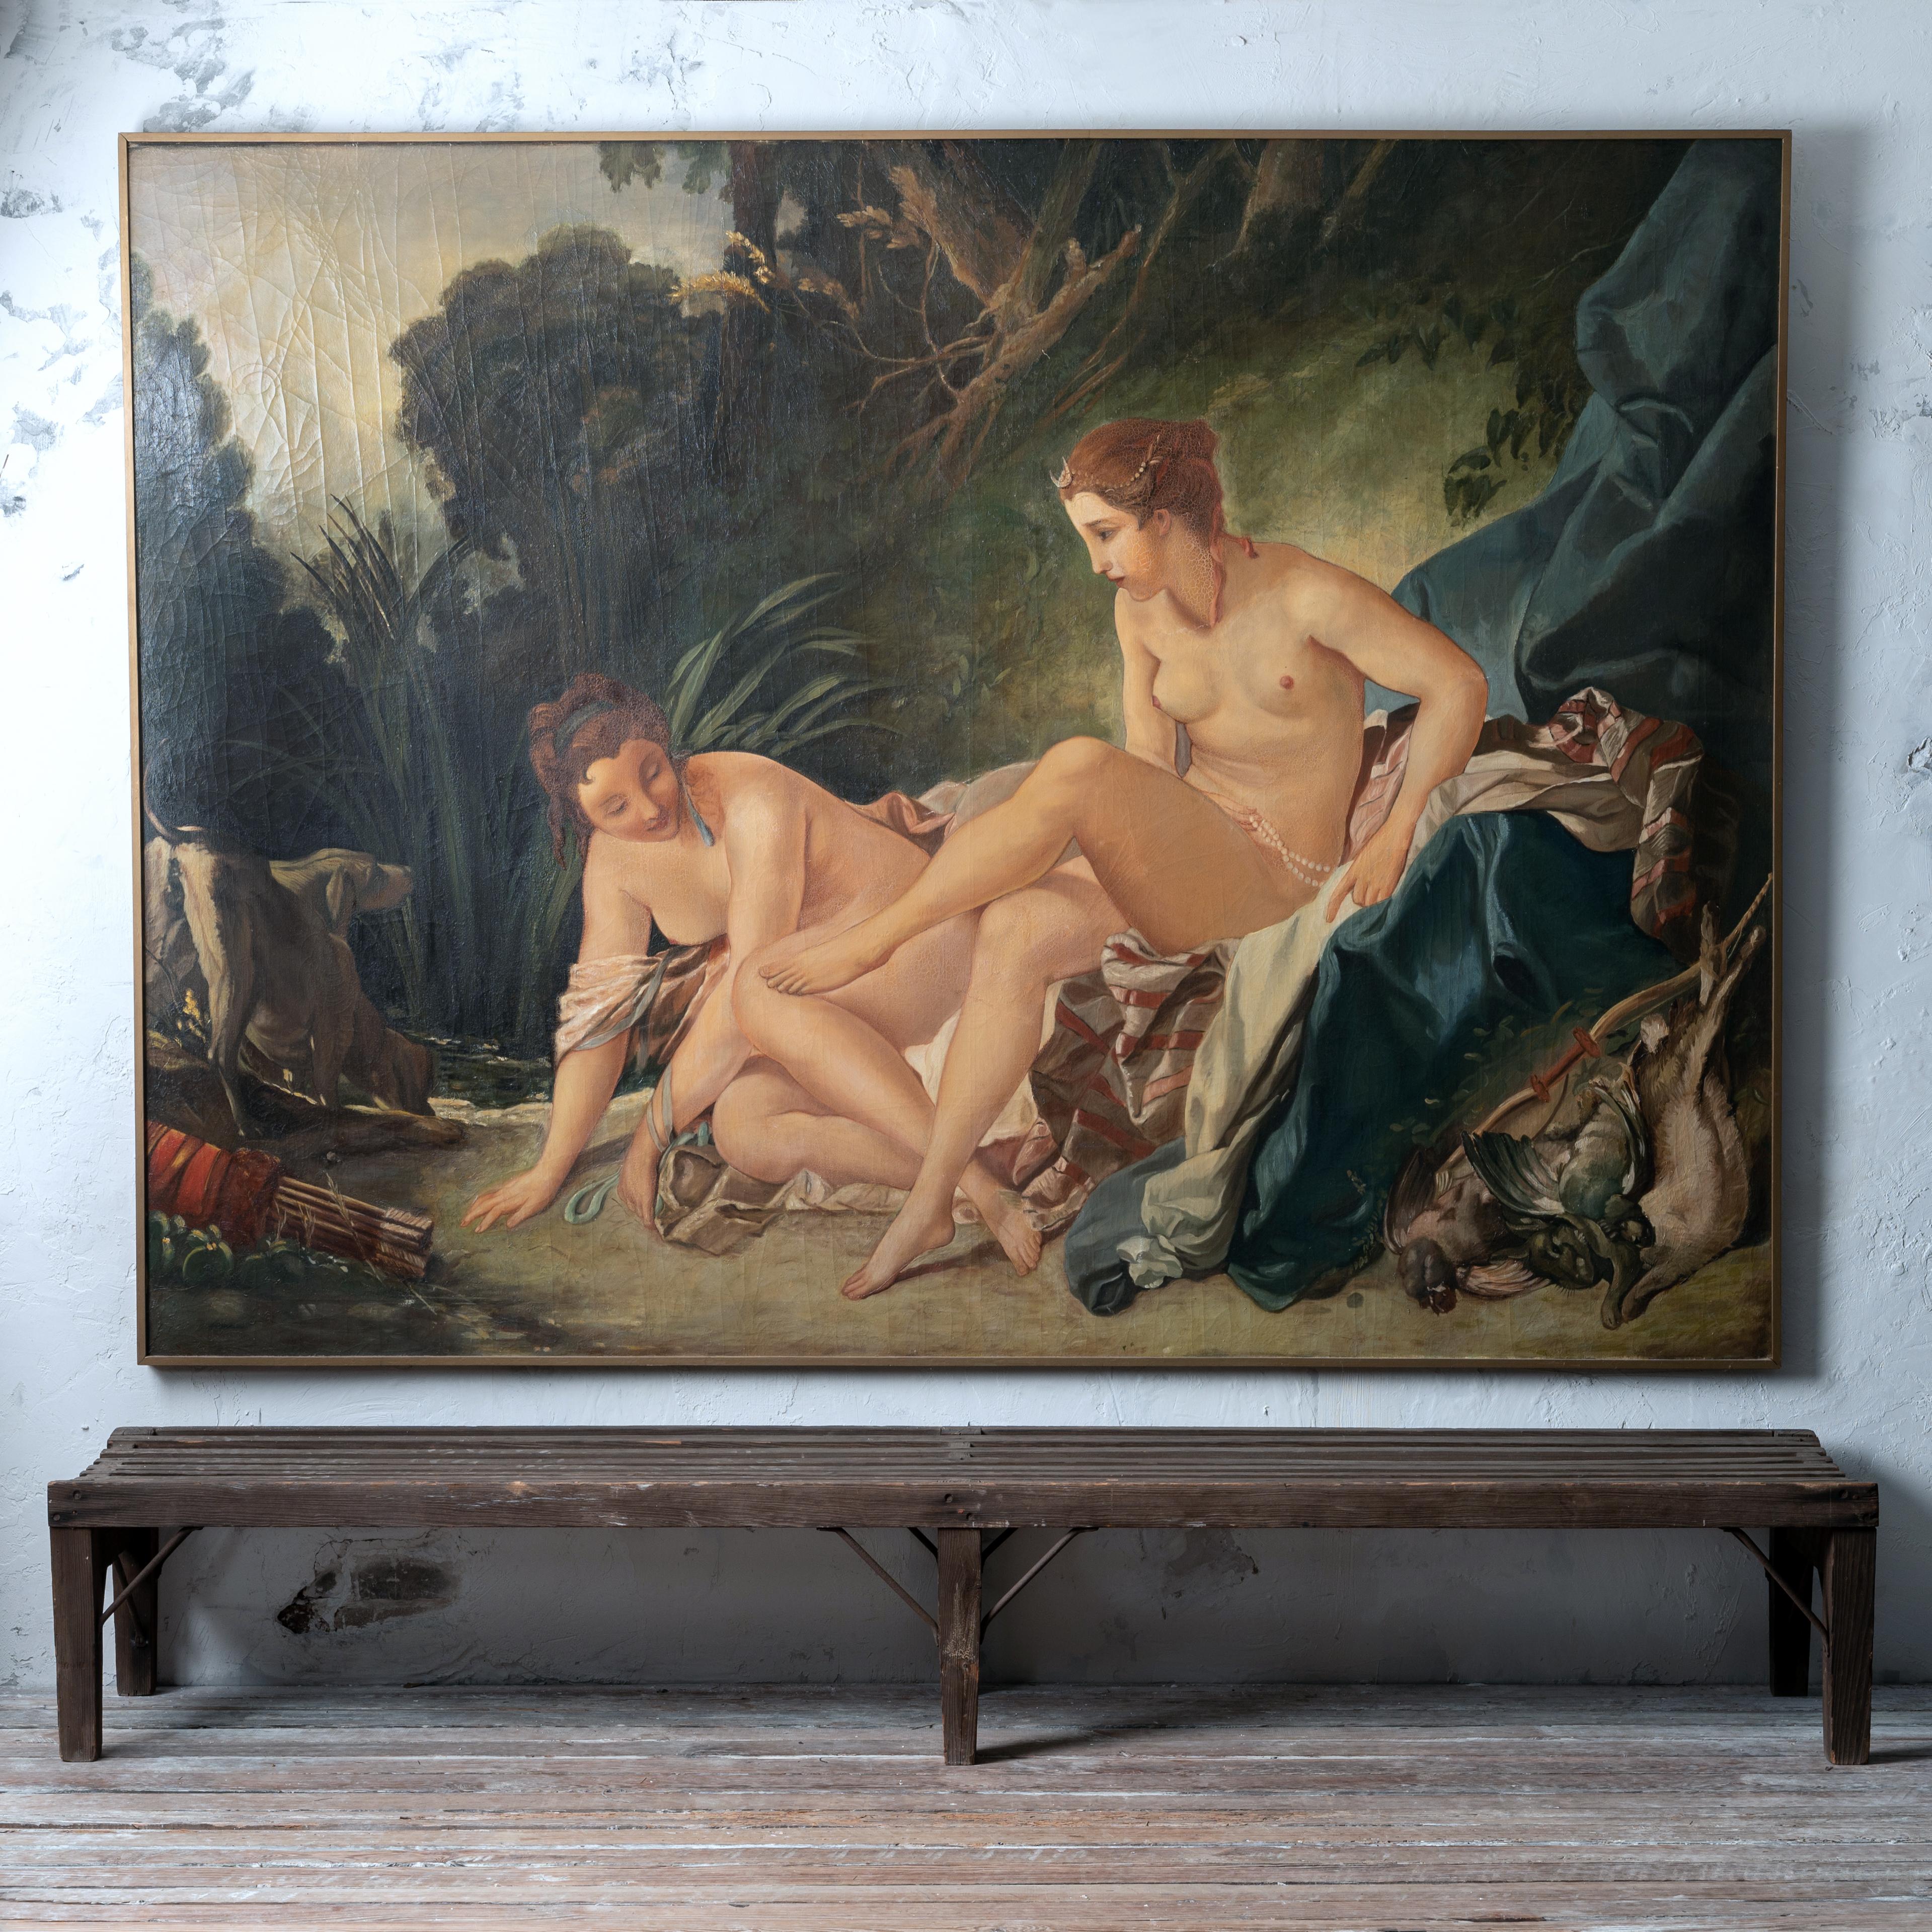 Ein großes Öl auf Leinwand nach François Boucher von einem Werk aus dem Jahr 1742, das sich im Louvre befindet, Diane sortant du bain oder Diana Bathing.  Frankreich, Ende des 19. Jahrhunderts.

93 x 69 ¼ Zoll; 1 ½ Zoll tief

